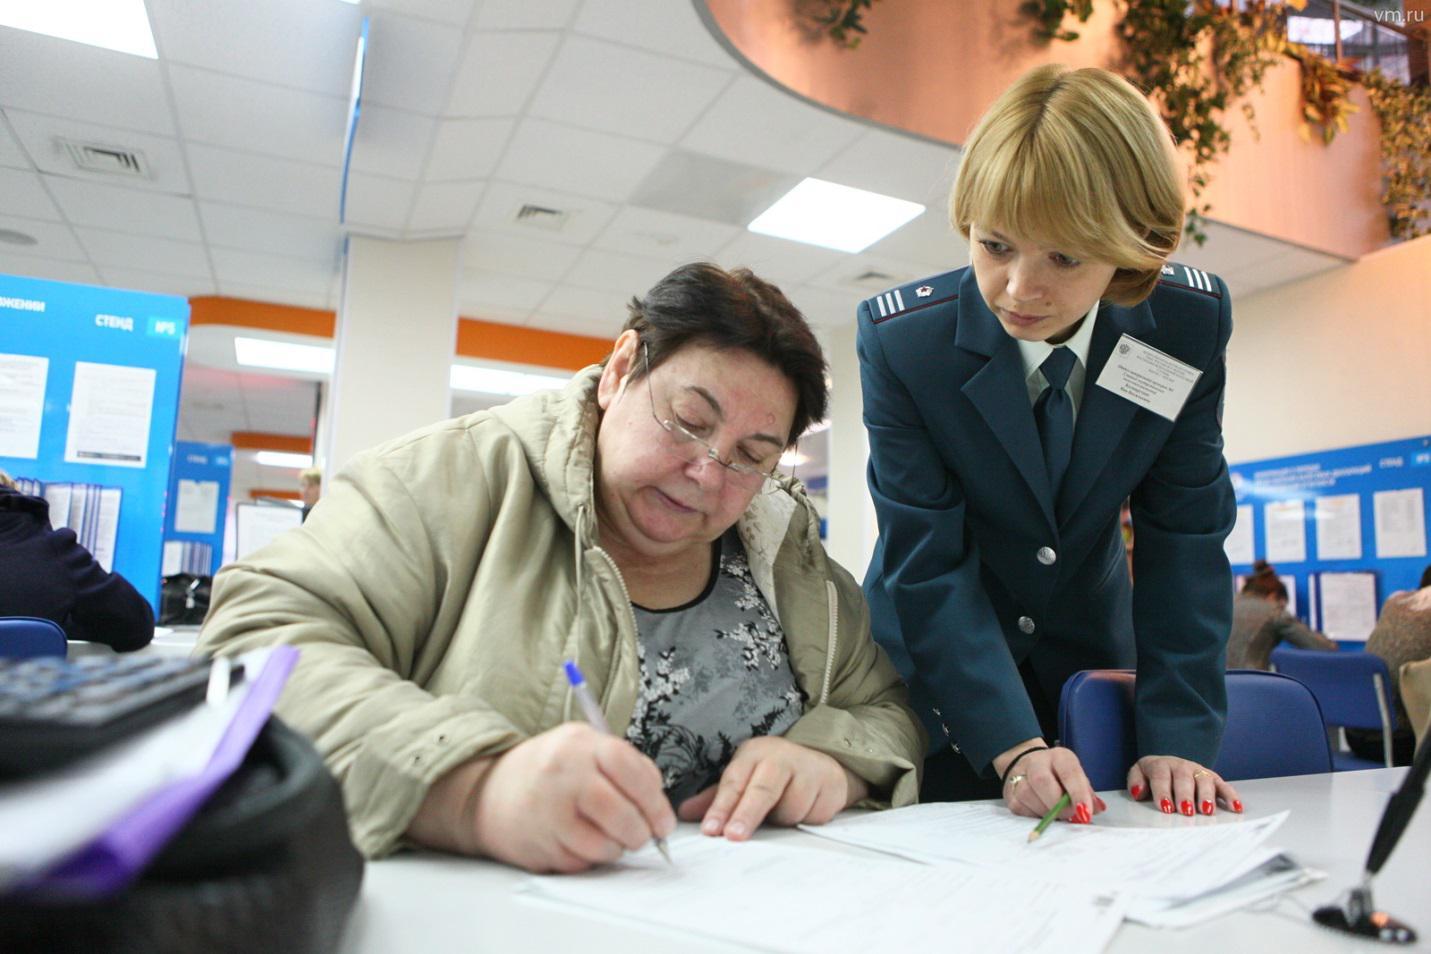 На фото ‒ Инспектор ФНС помогает человеку заполнять документы